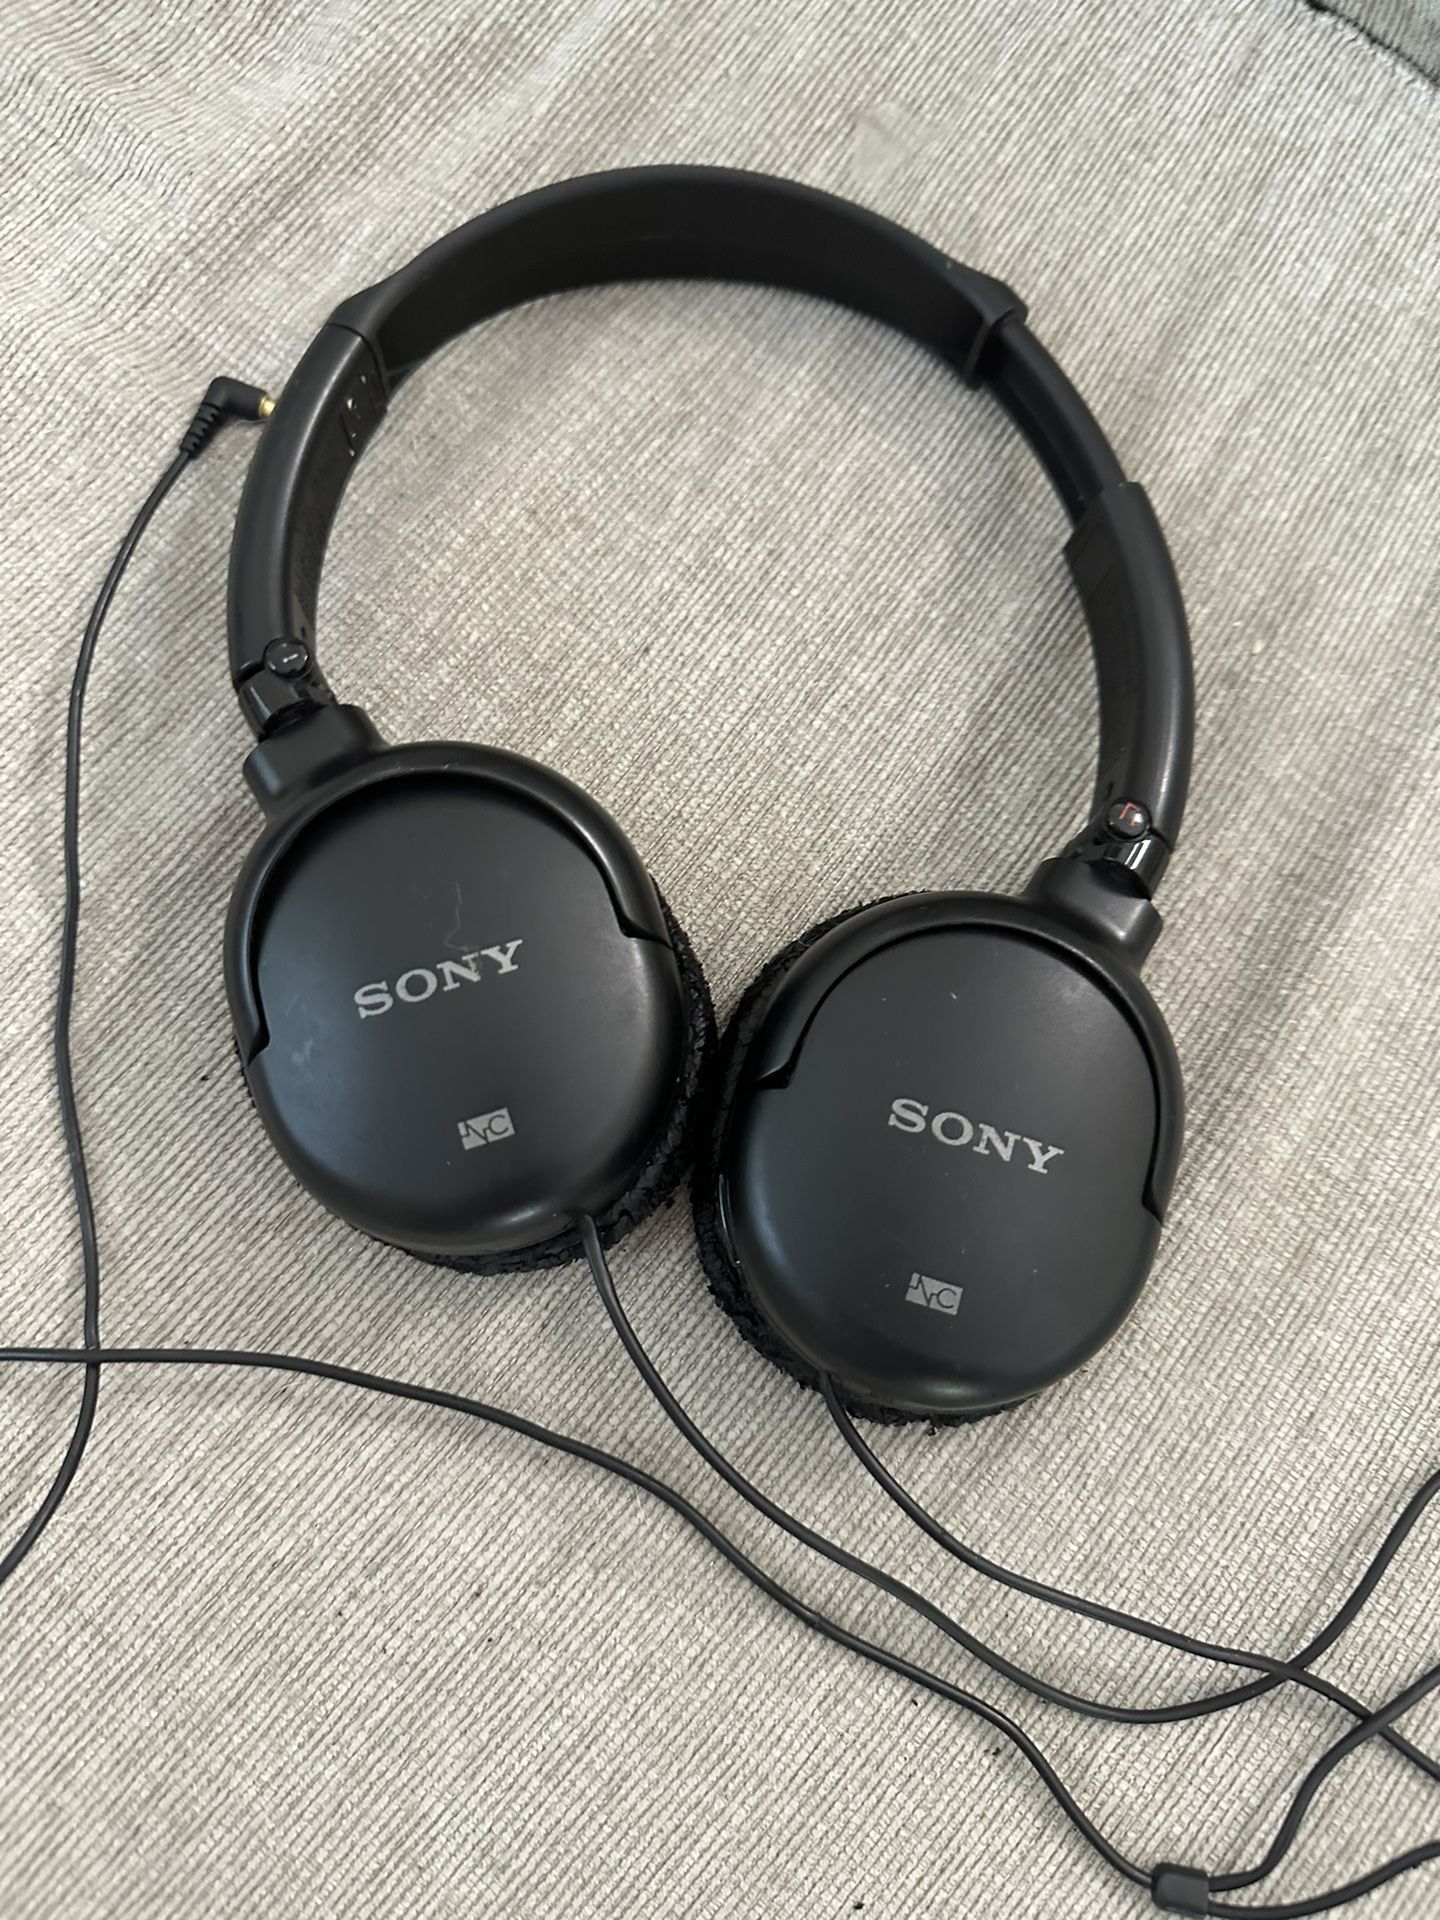 Sony Corded Headphones